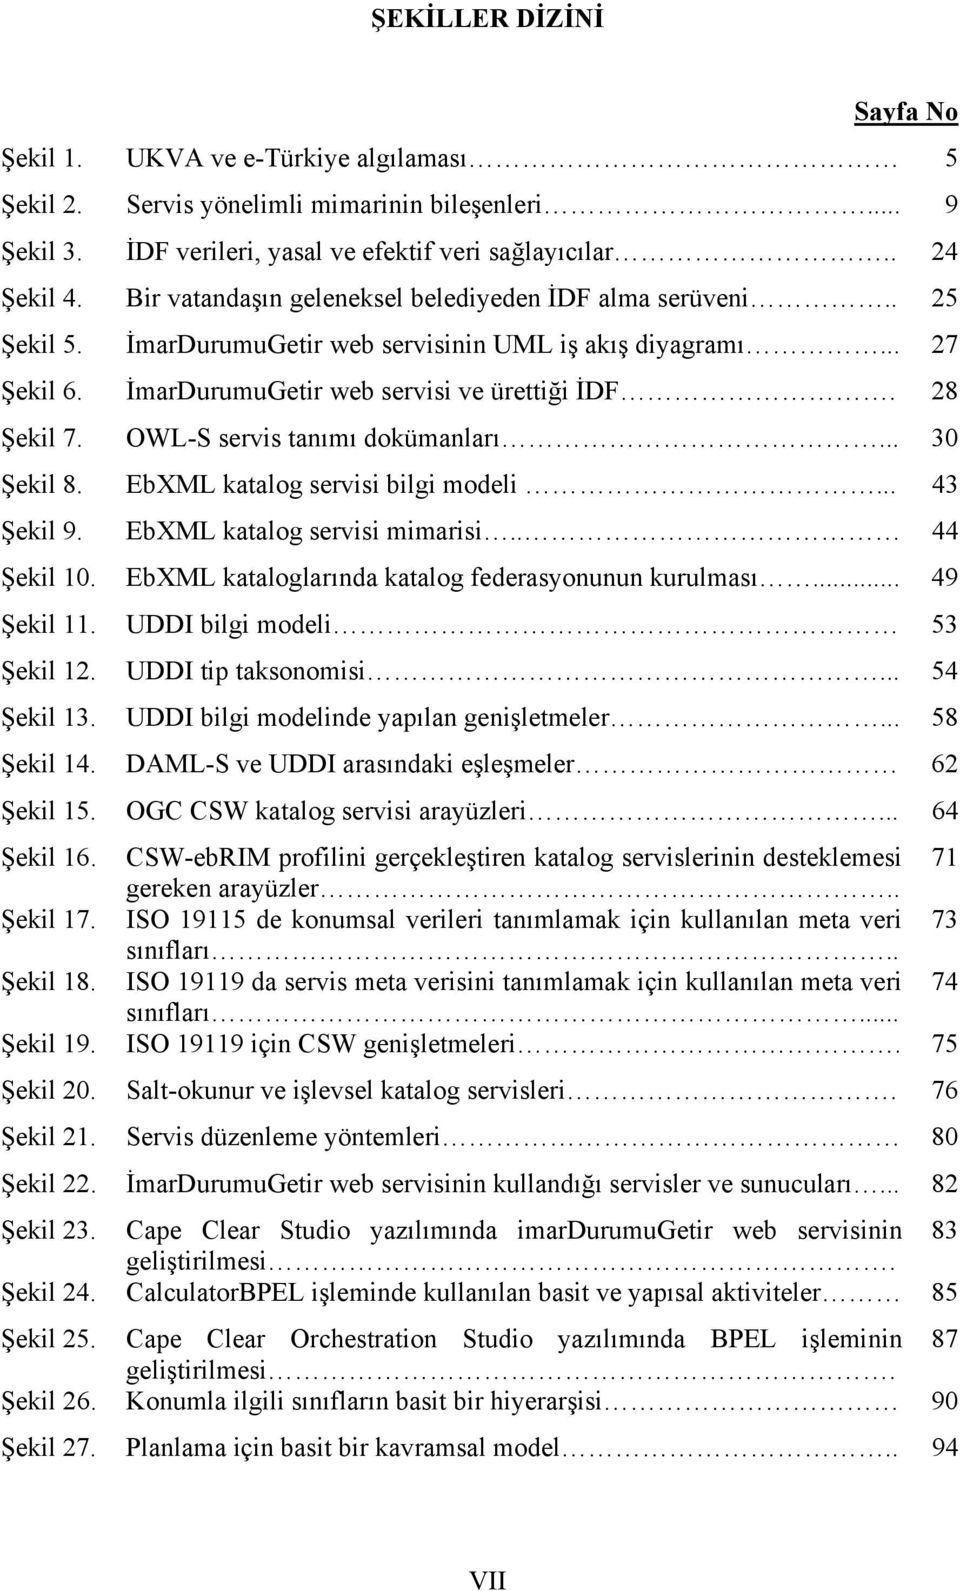 OWL-S servis tanımı dokümanları... 30 Şekil 8. EbXML katalog servisi bilgi modeli... 43 Şekil 9. EbXML katalog servisi mimarisi.. 44 Şekil 10. EbXML kataloglarında katalog federasyonunun kurulması.